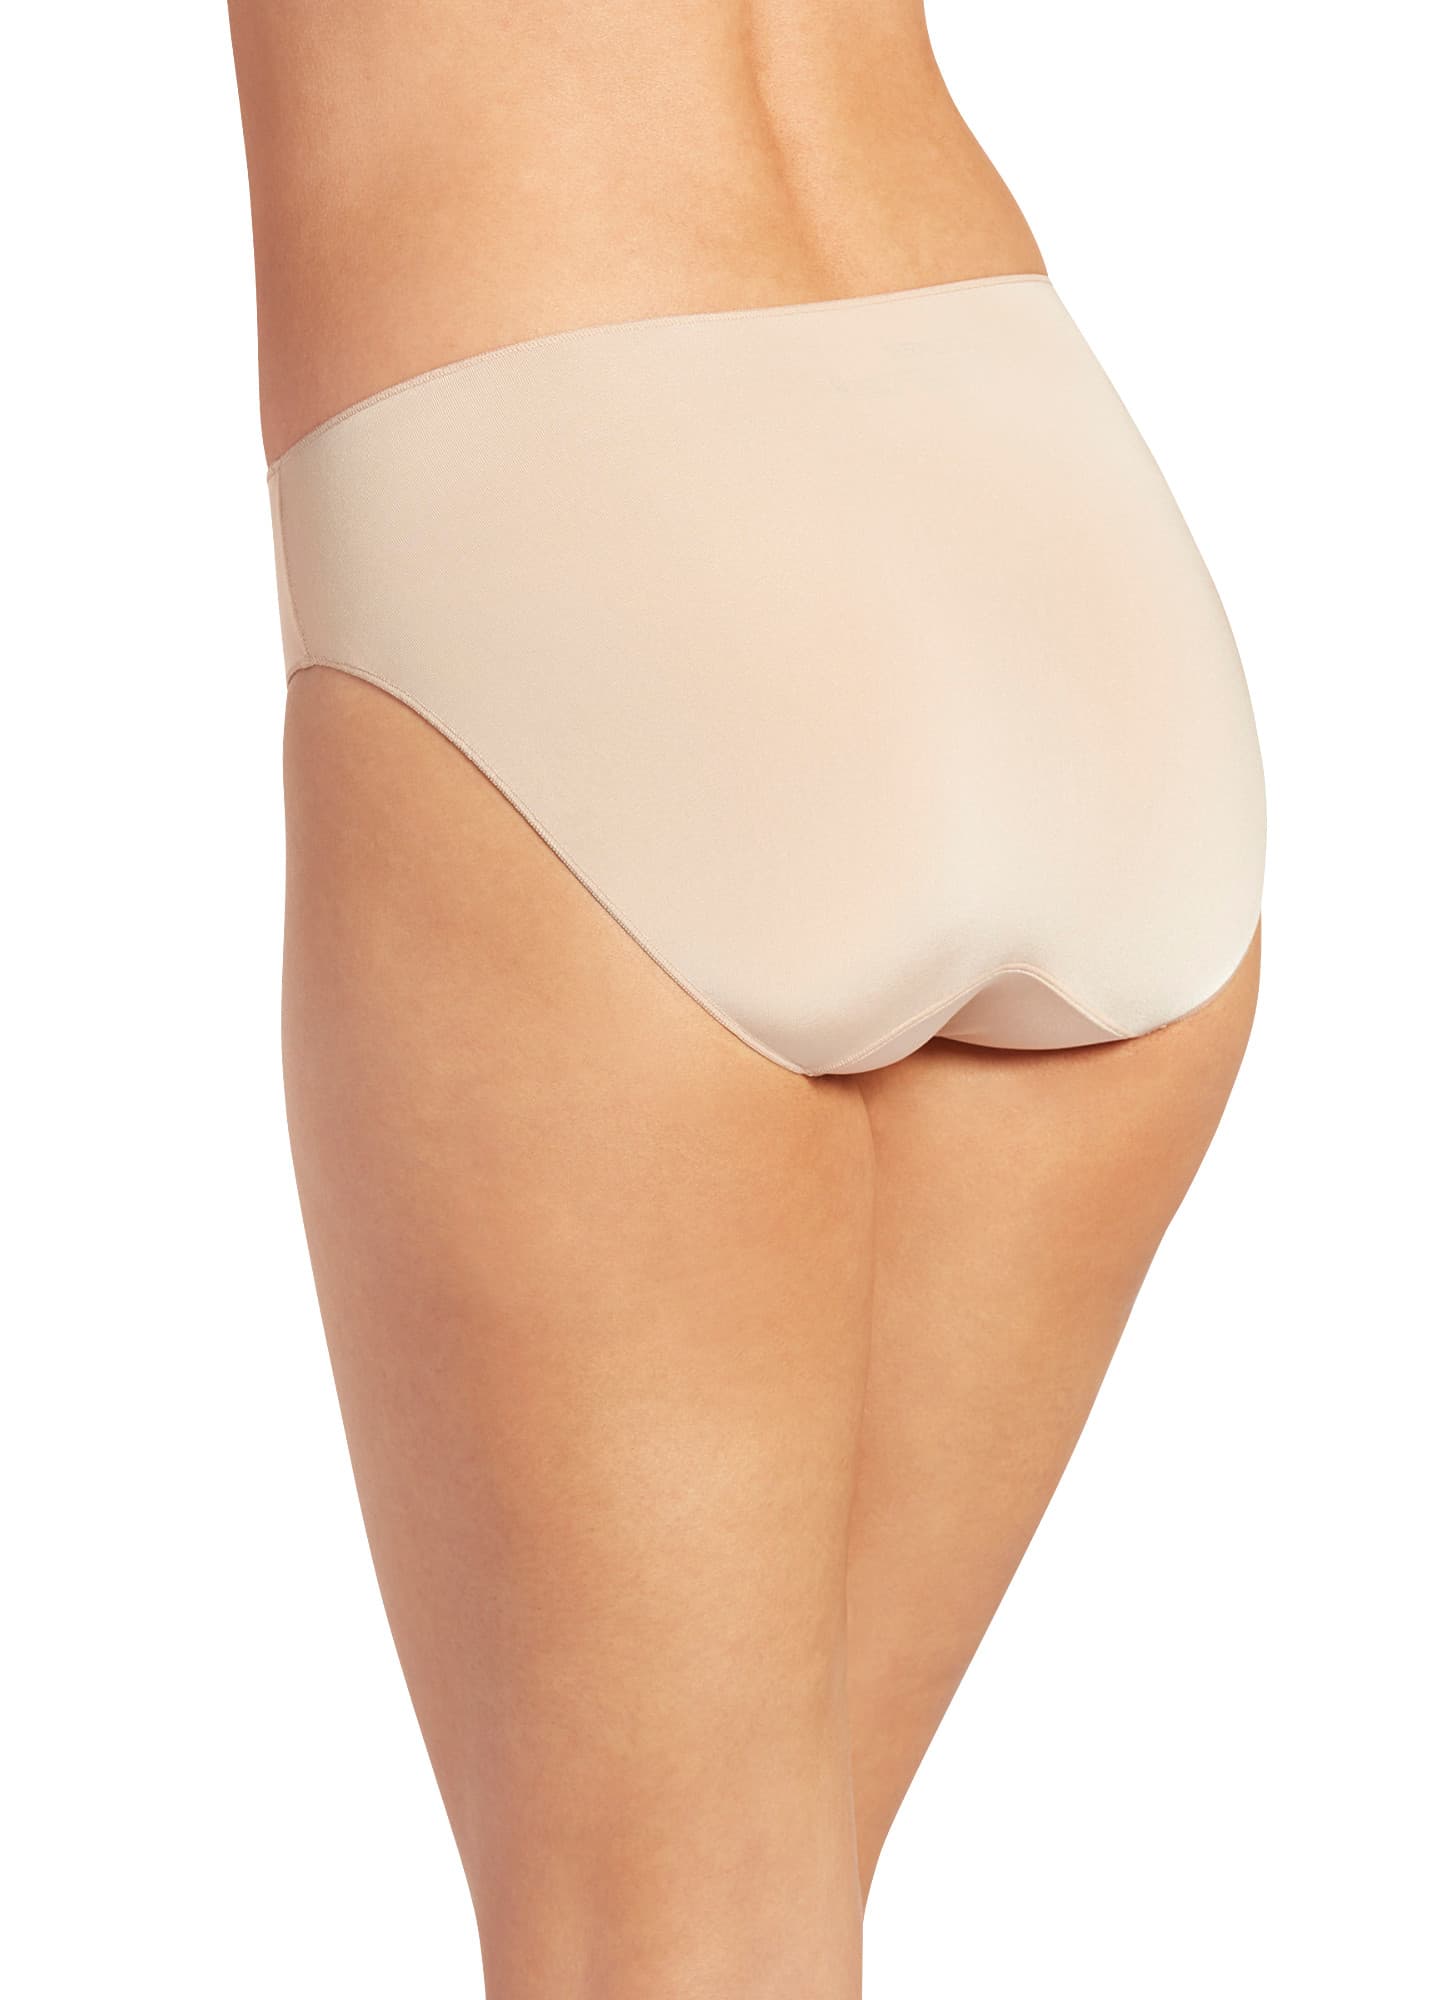 Jockey Panties Women's Underwear Elance Size 11 French Cut Style 1485 for  sale online